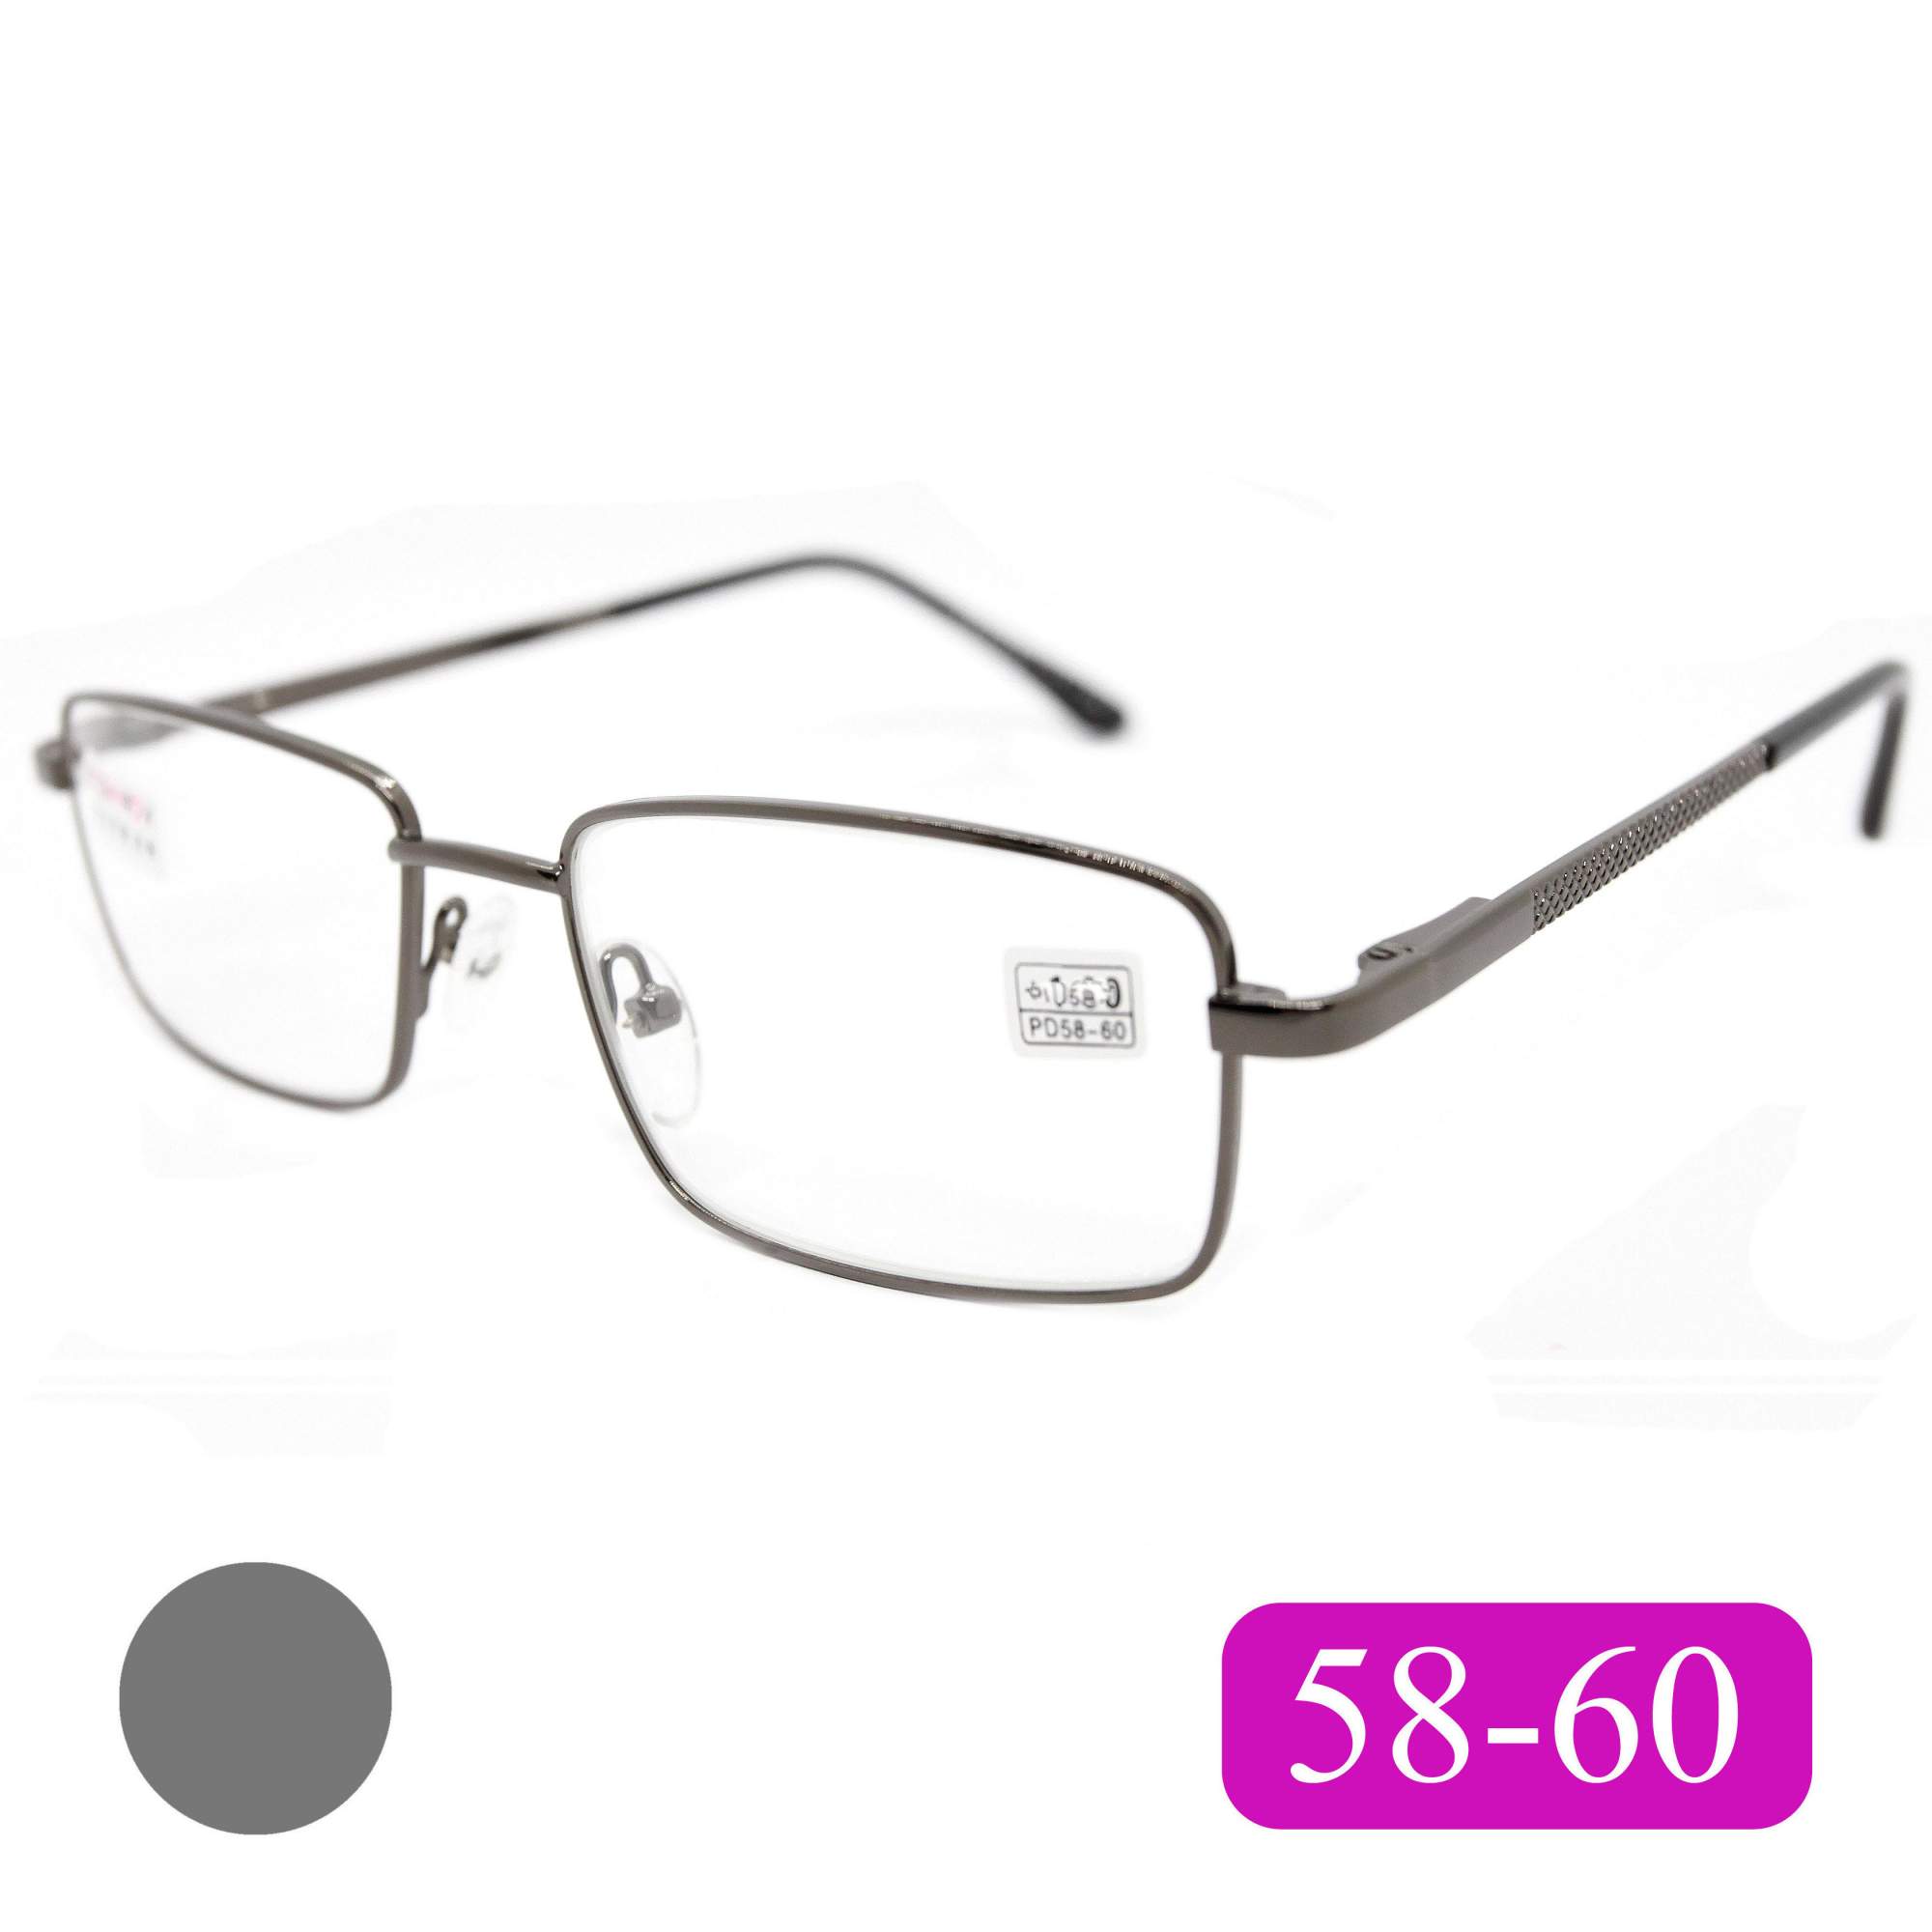 Готовые очки Fedrov 569, со стеклянной линзой, +0,50, без футляра, цвет серый, РЦ 58-60